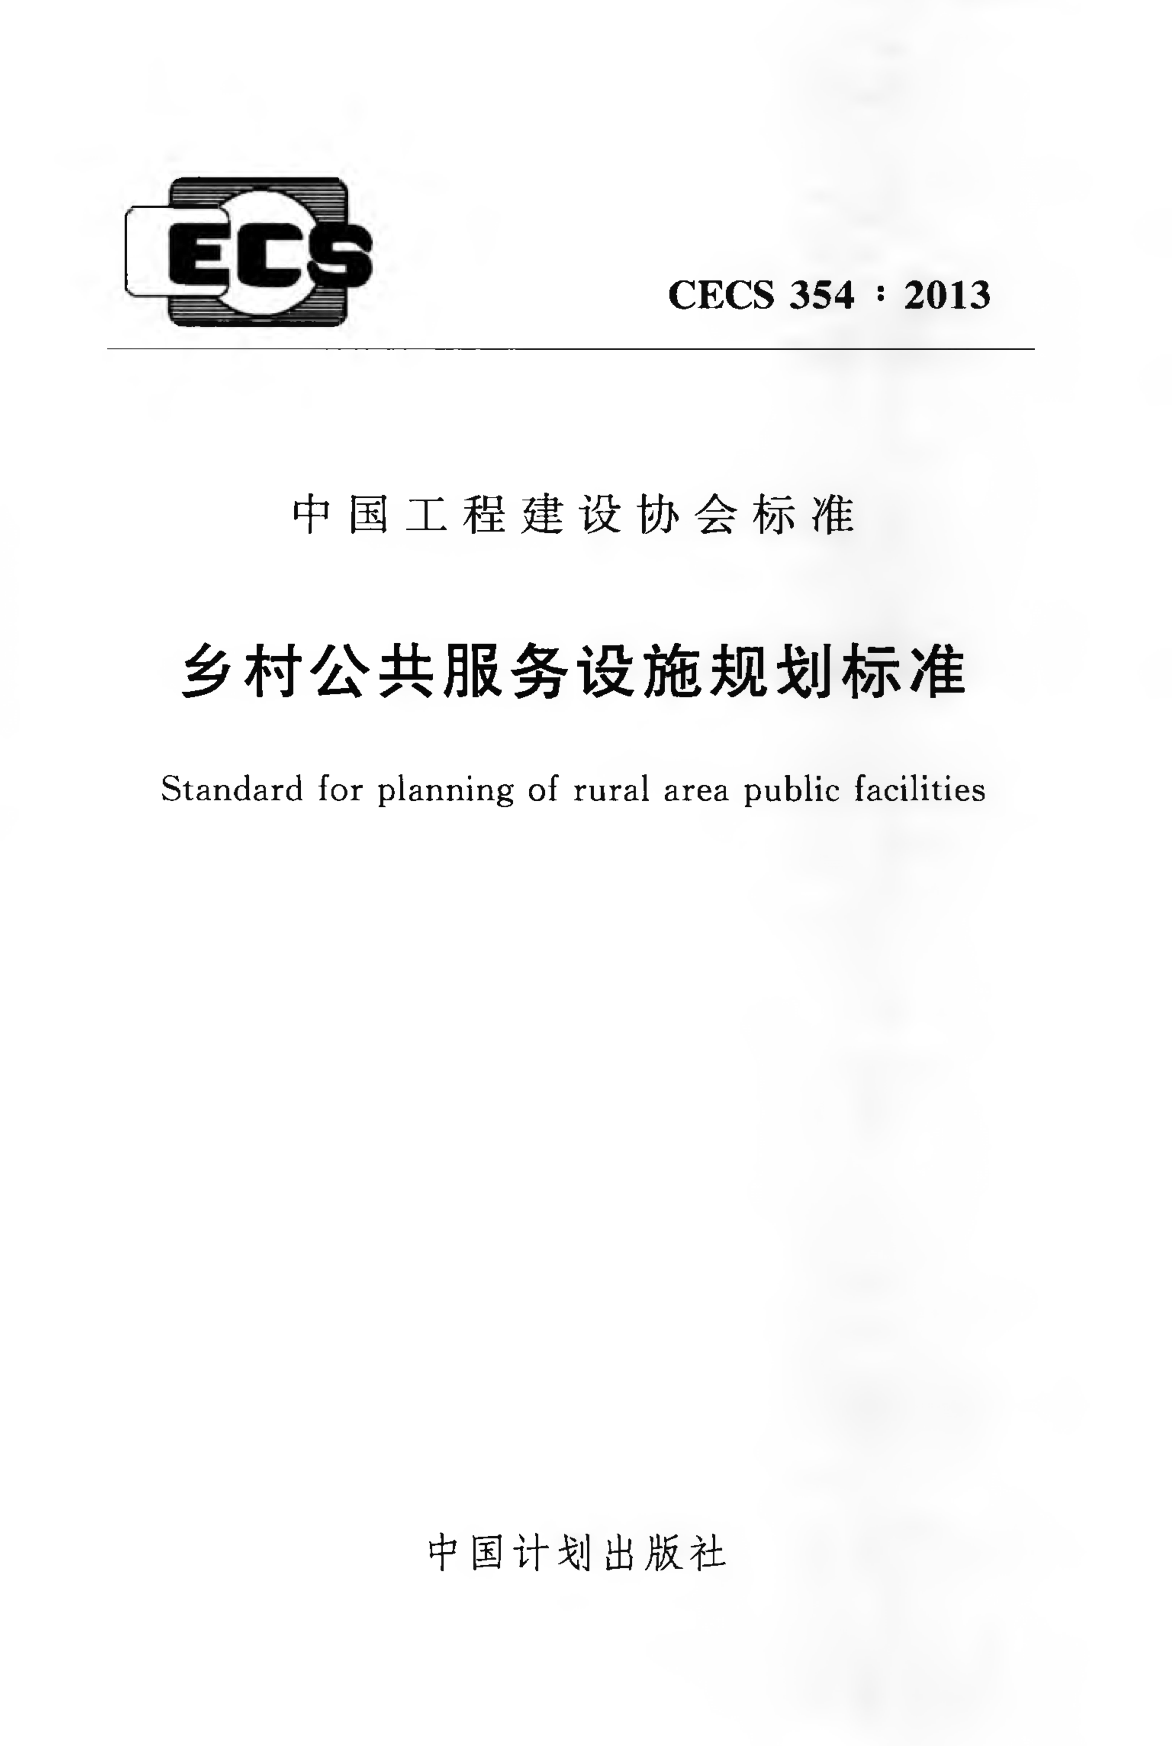 CECS 354-2013 乡村公共服务设施规划标准